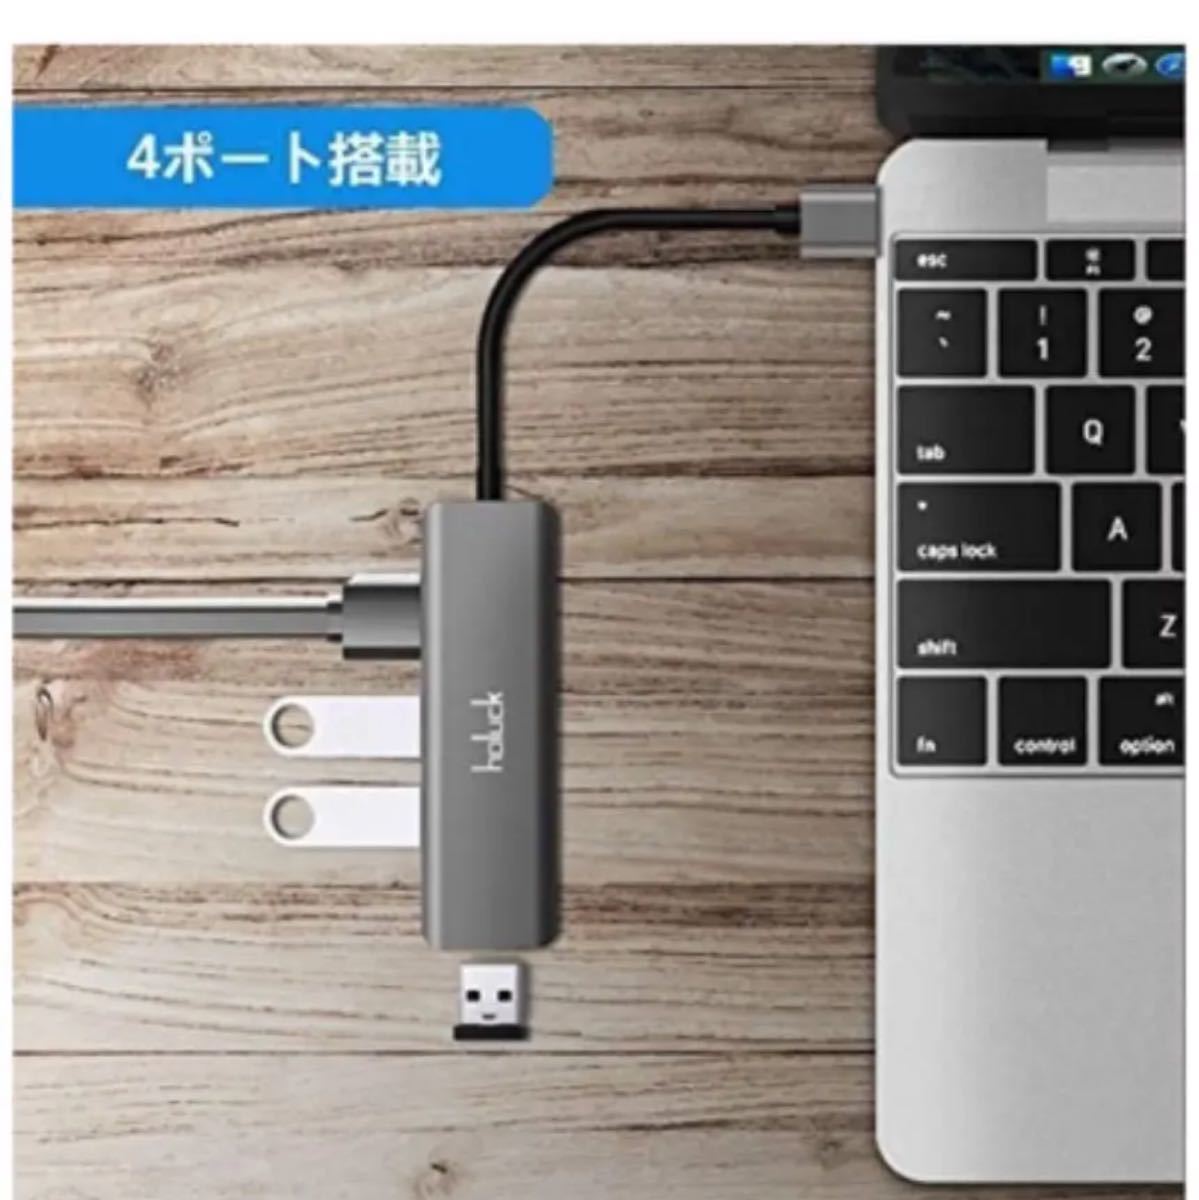 USB 3.0 ハブ USB HUB ウルトラスリムUSB 3.0 *4ポート 5Gbps 高速 ハブ バスパワー 軽量コンパクト